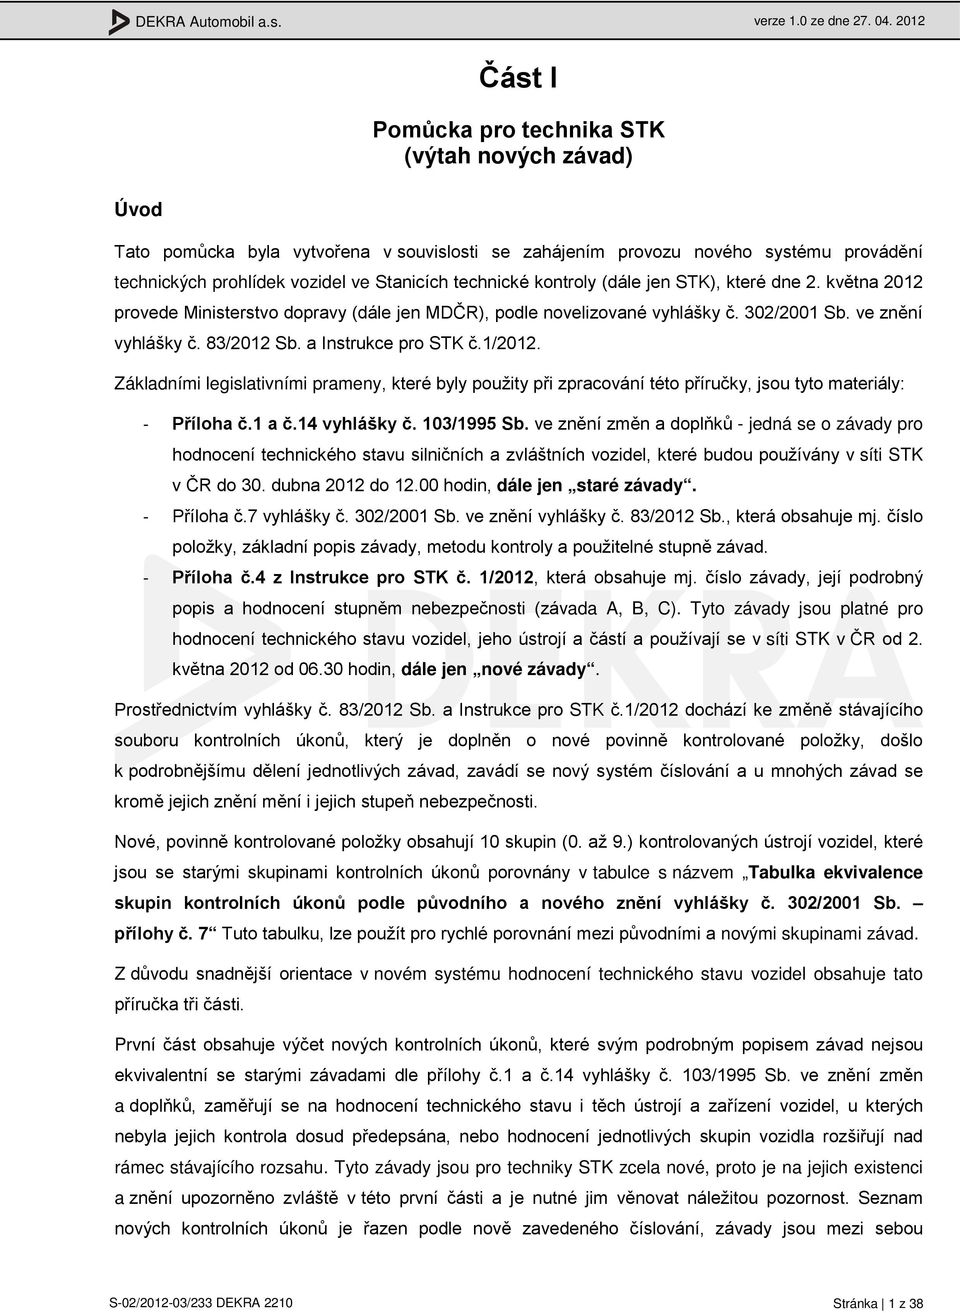 kontroly (dále jen STK), které dne 2. května 2012 provede Ministerstvo dopravy (dále jen MDČR), podle novelizované vyhlášky č. 302/2001 Sb. ve znění vyhlášky č. 83/2012 Sb. a Instrukce pro STK č.